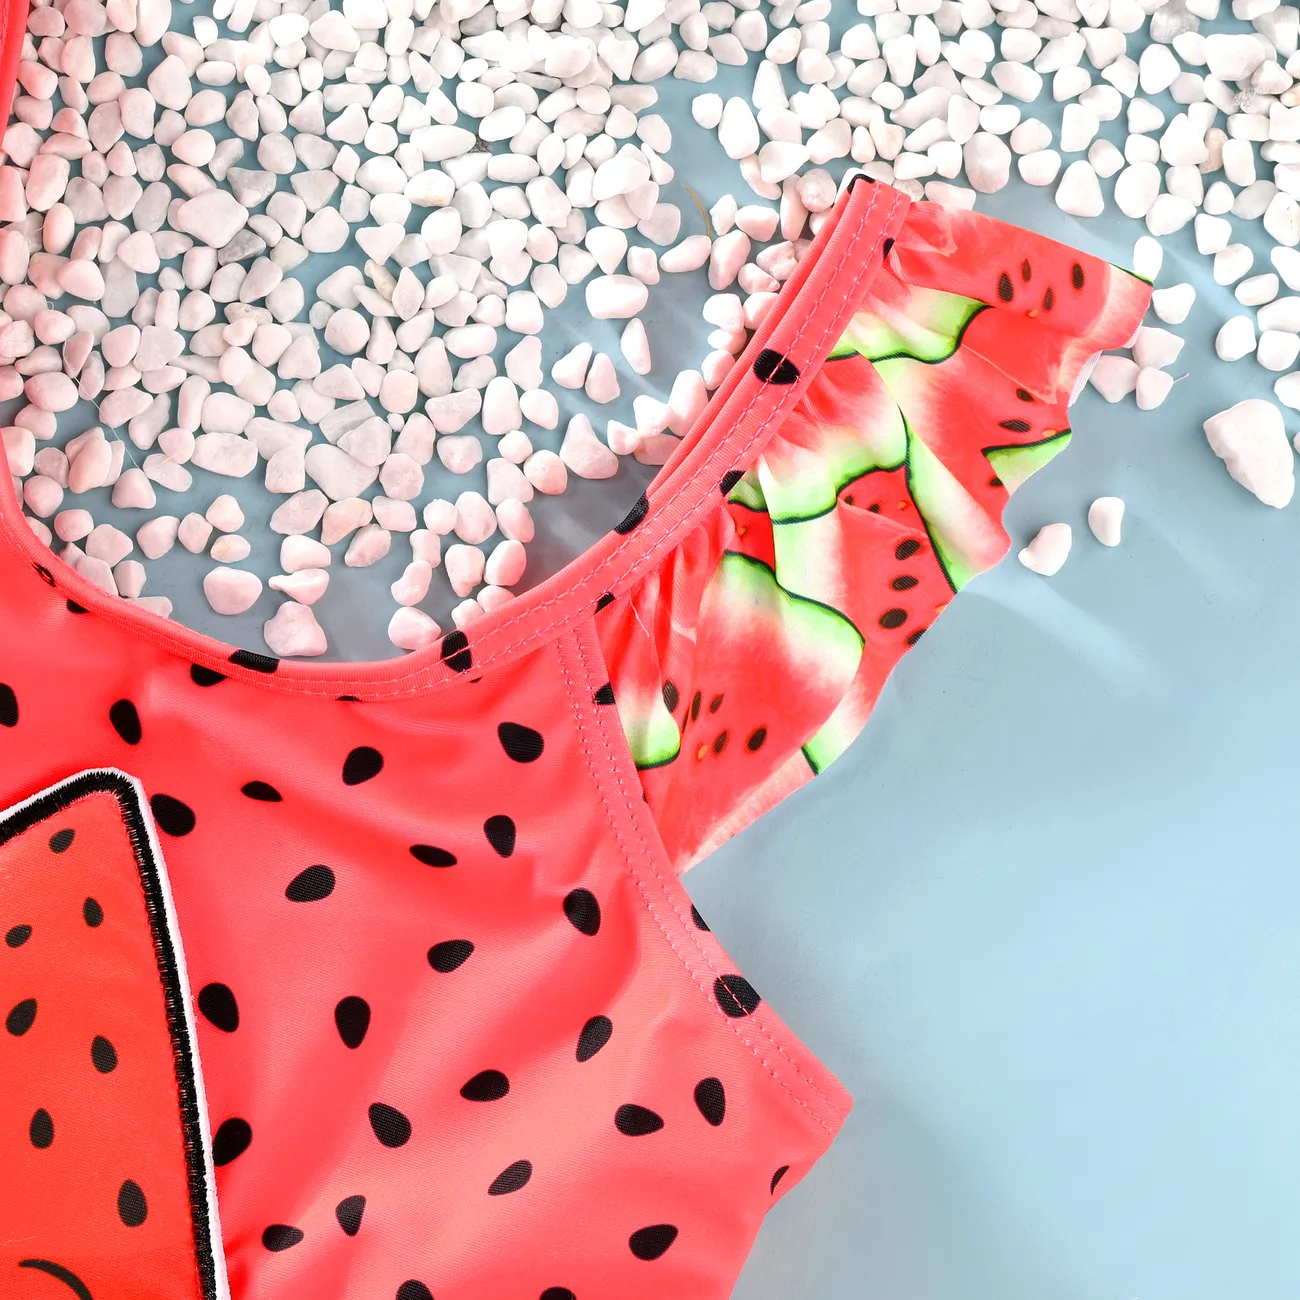 بدلة سباحة للأطفال بتصميم فريد لون البطيخ - 1 قطعة مصنوعة من مزيج البوليستر والسباندكس، ملائمة للجسم أحمر big image 1